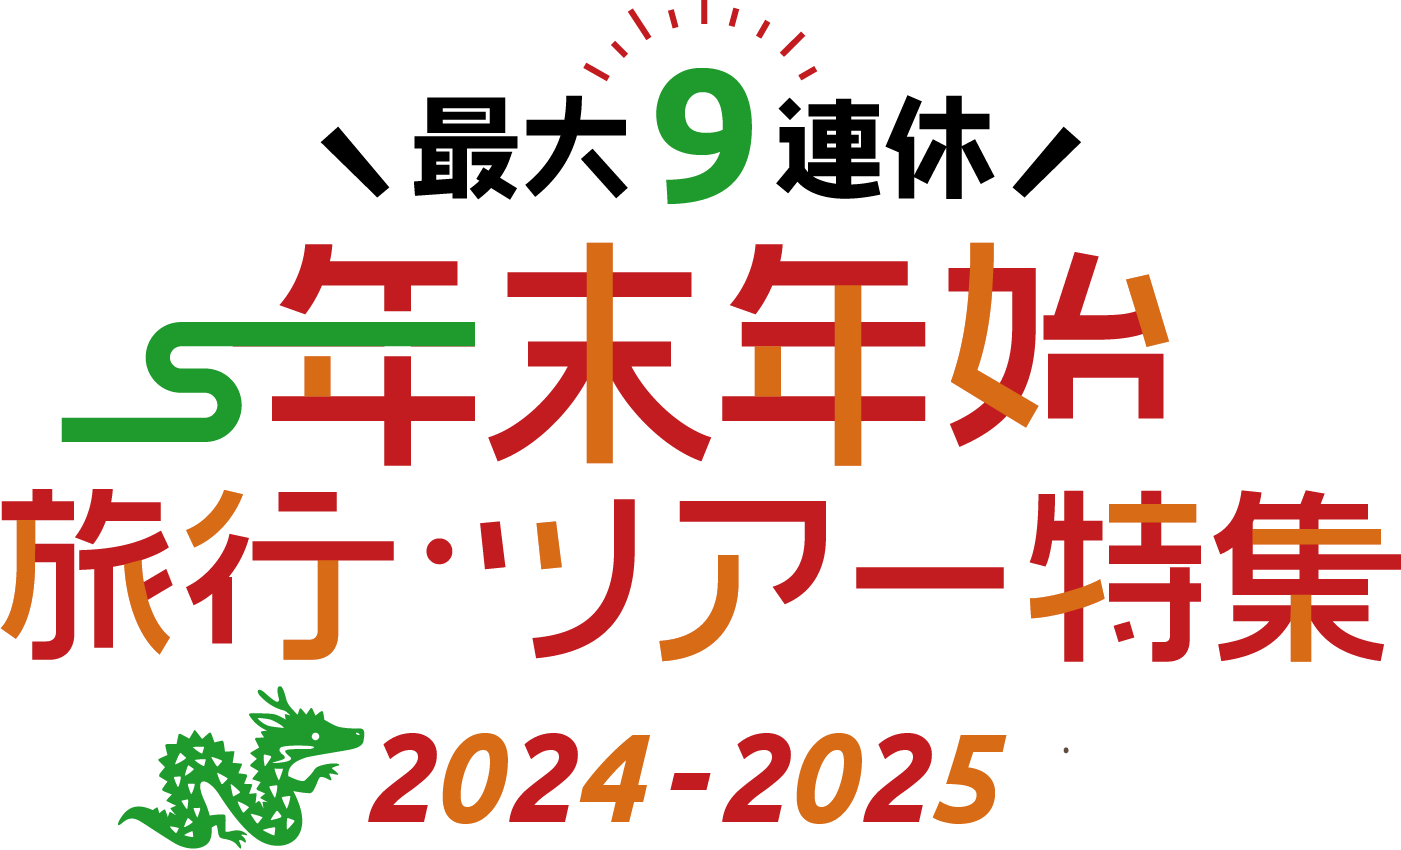 【九州エリア】年末年始・お正月におすすめのホテル・旅館の宿泊予約 2024-2025